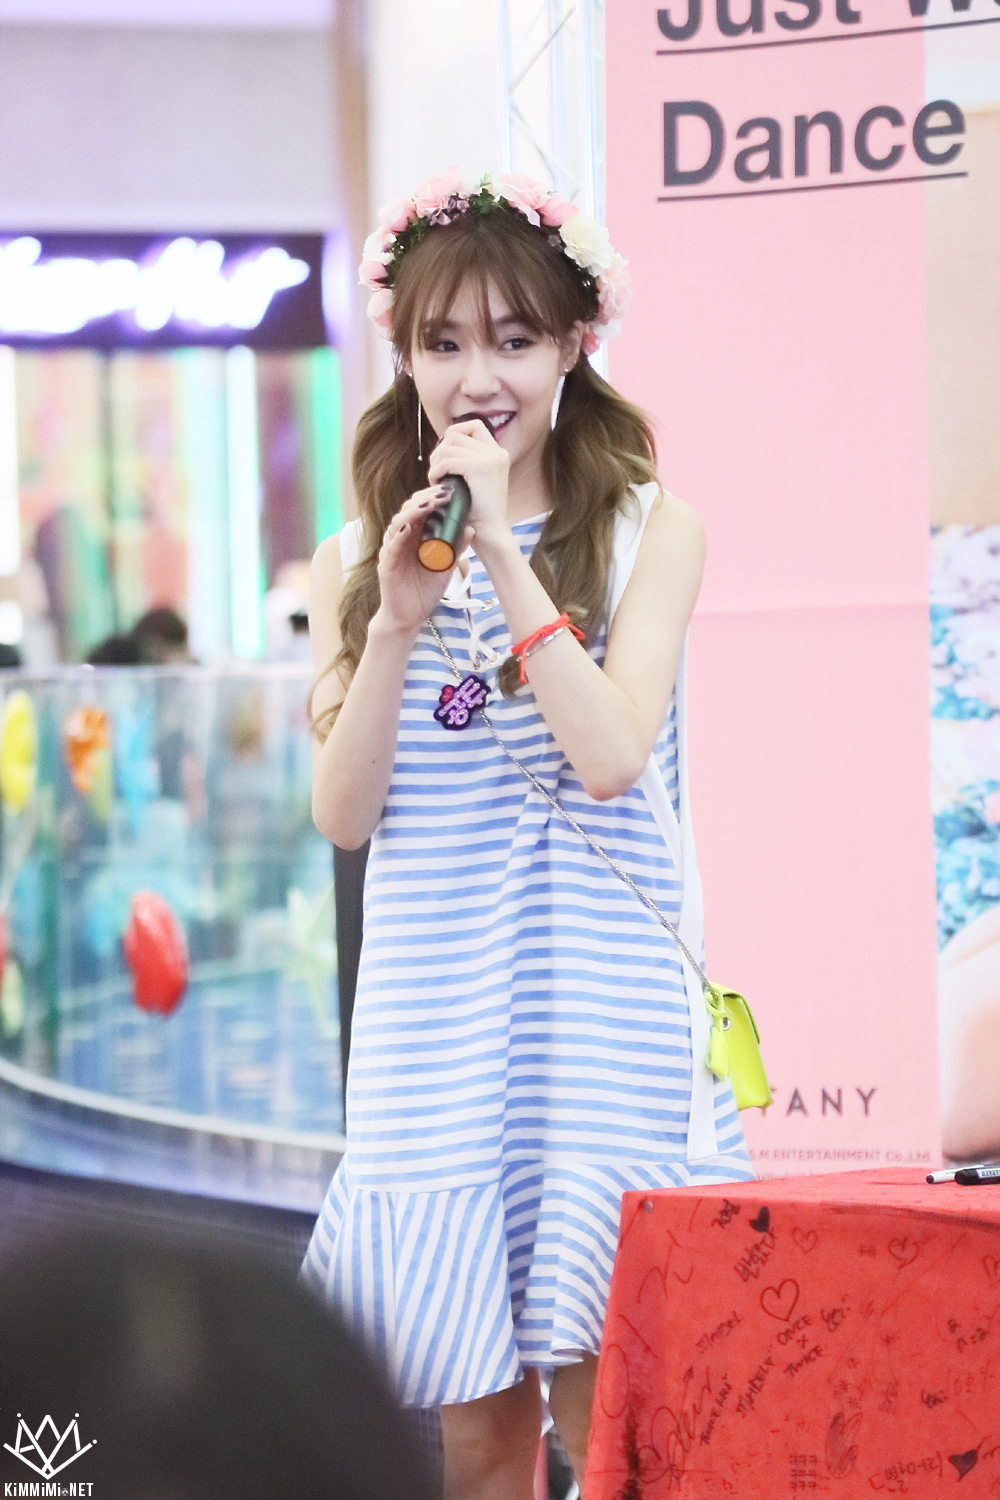 [PIC][06-06-2016]Tiffany tham dự buổi Fansign cho "I Just Wanna Dance" tại Busan vào chiều nay - Page 5 2646B939575818C712FF07